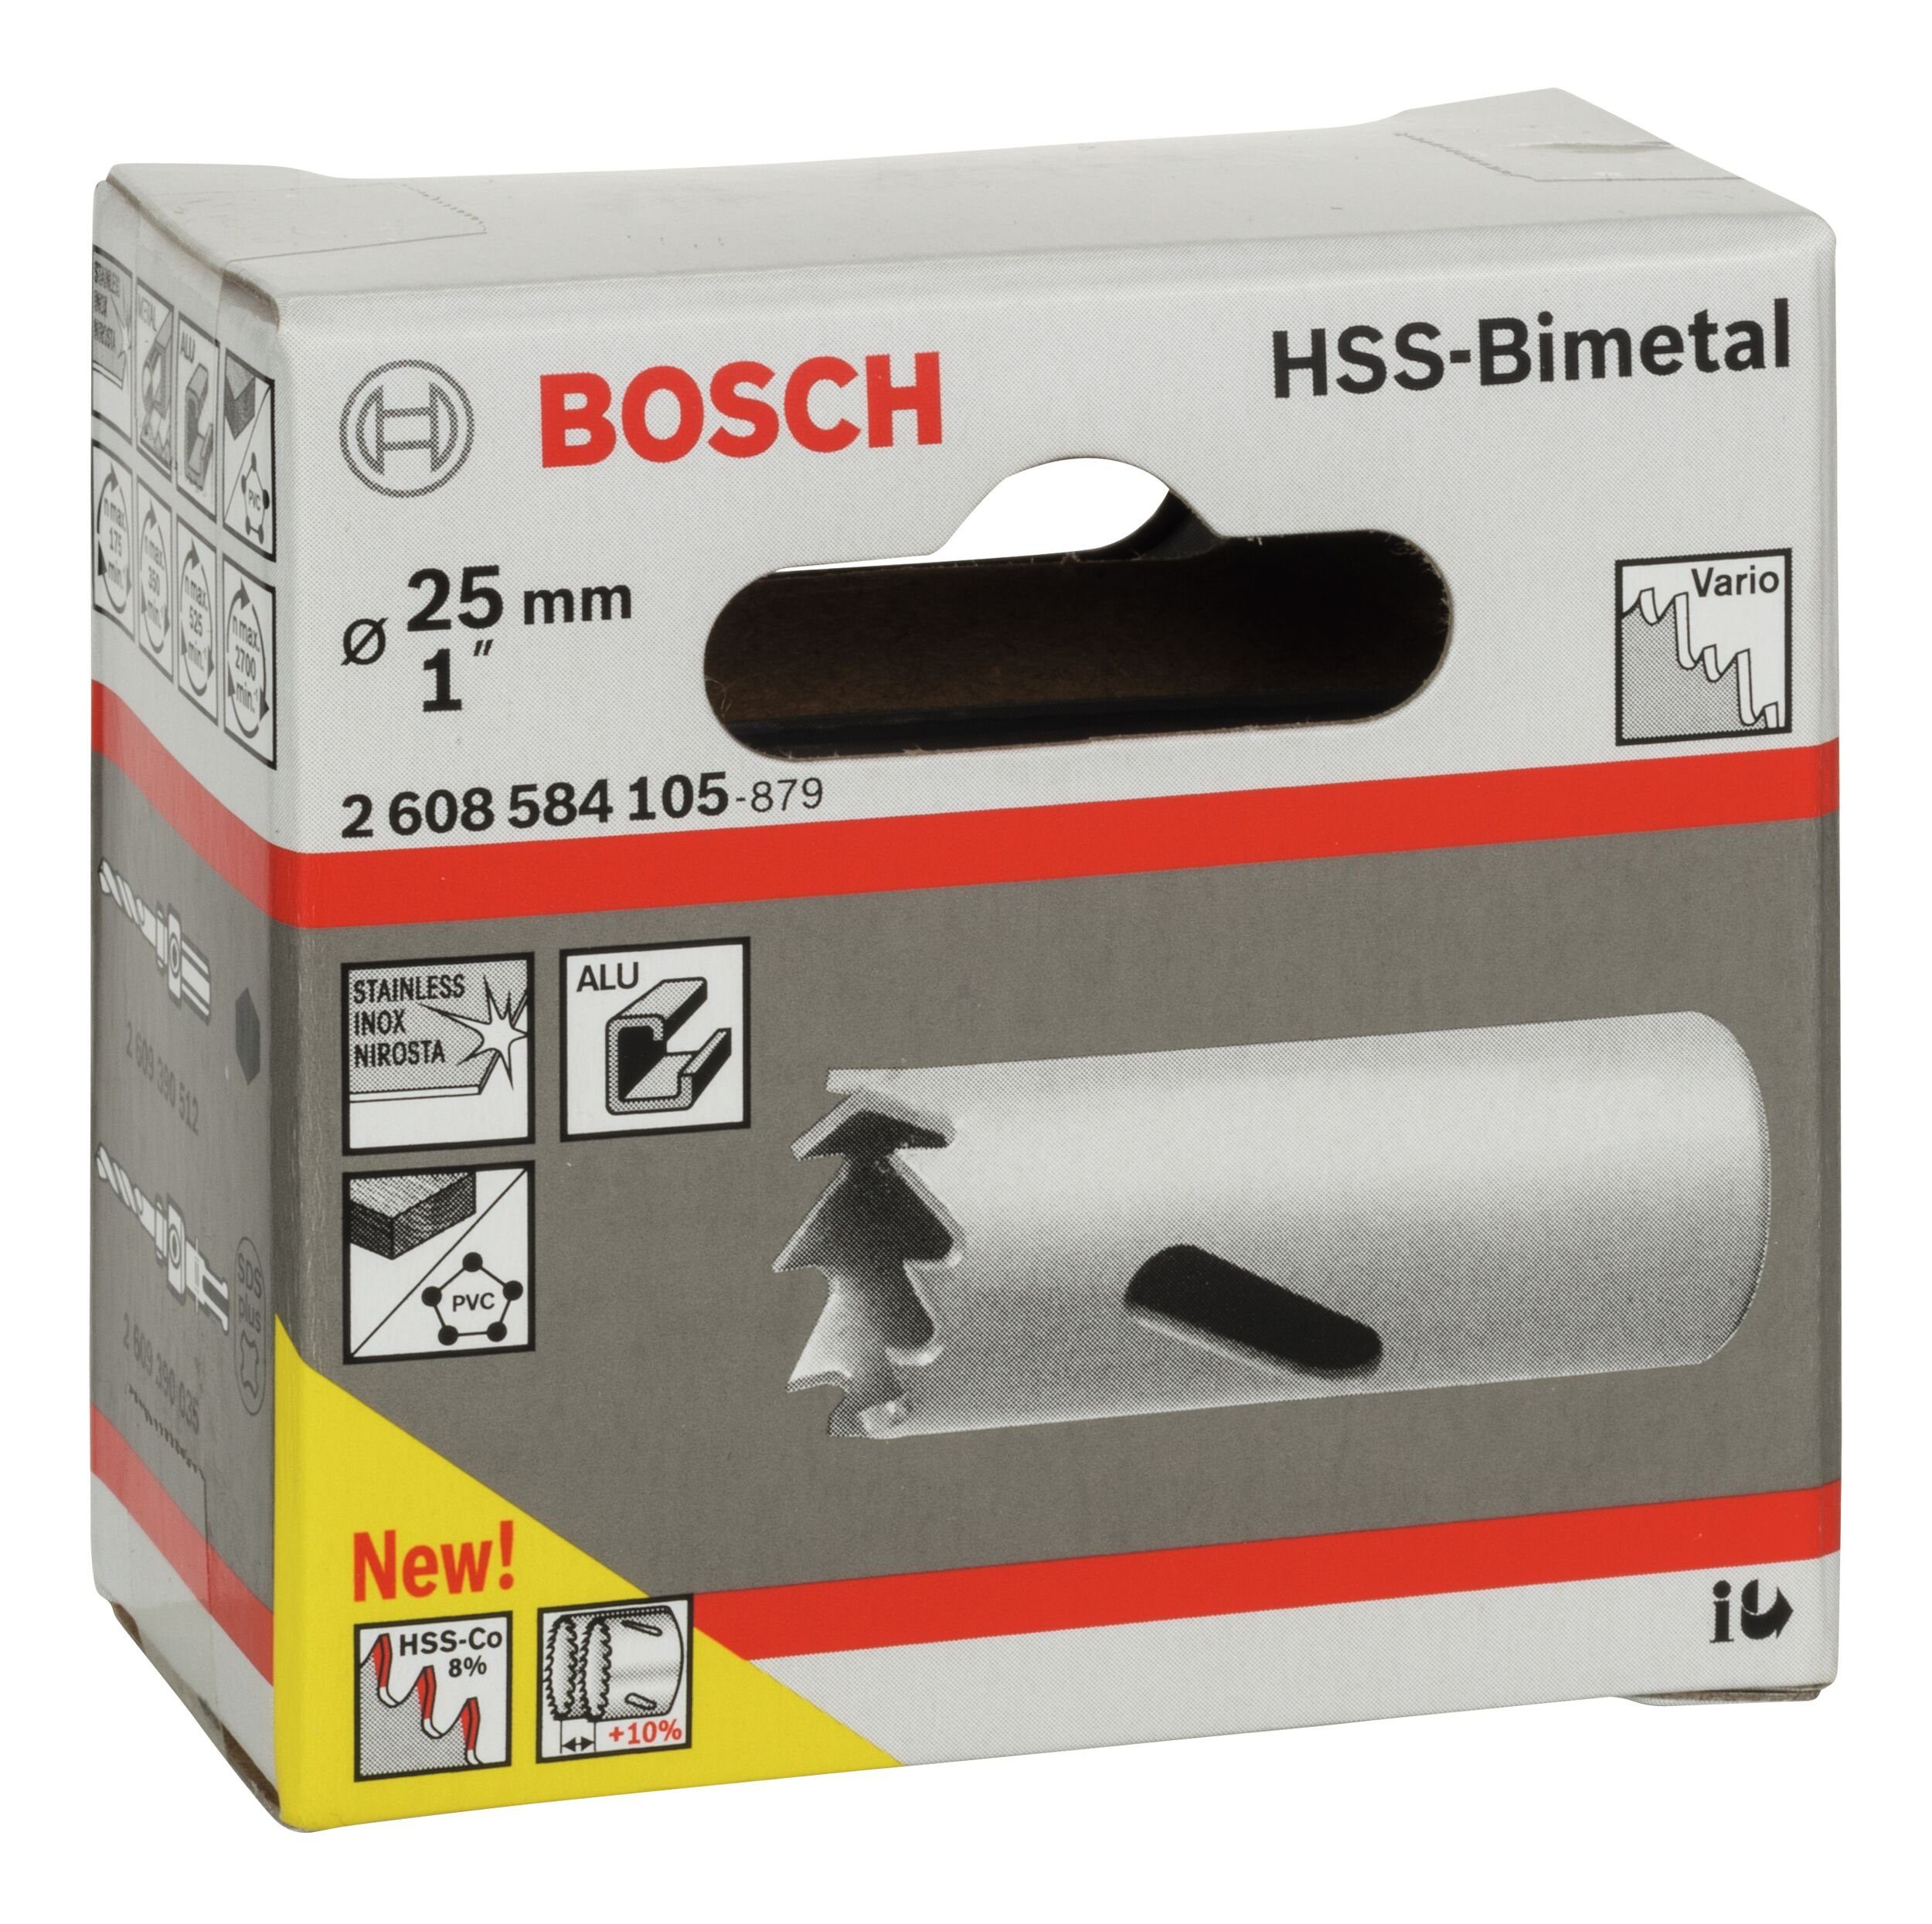 BOSCH Lochsäge, Ø 25 mm, - / Standardadapter für HSS-Bimetall 1"